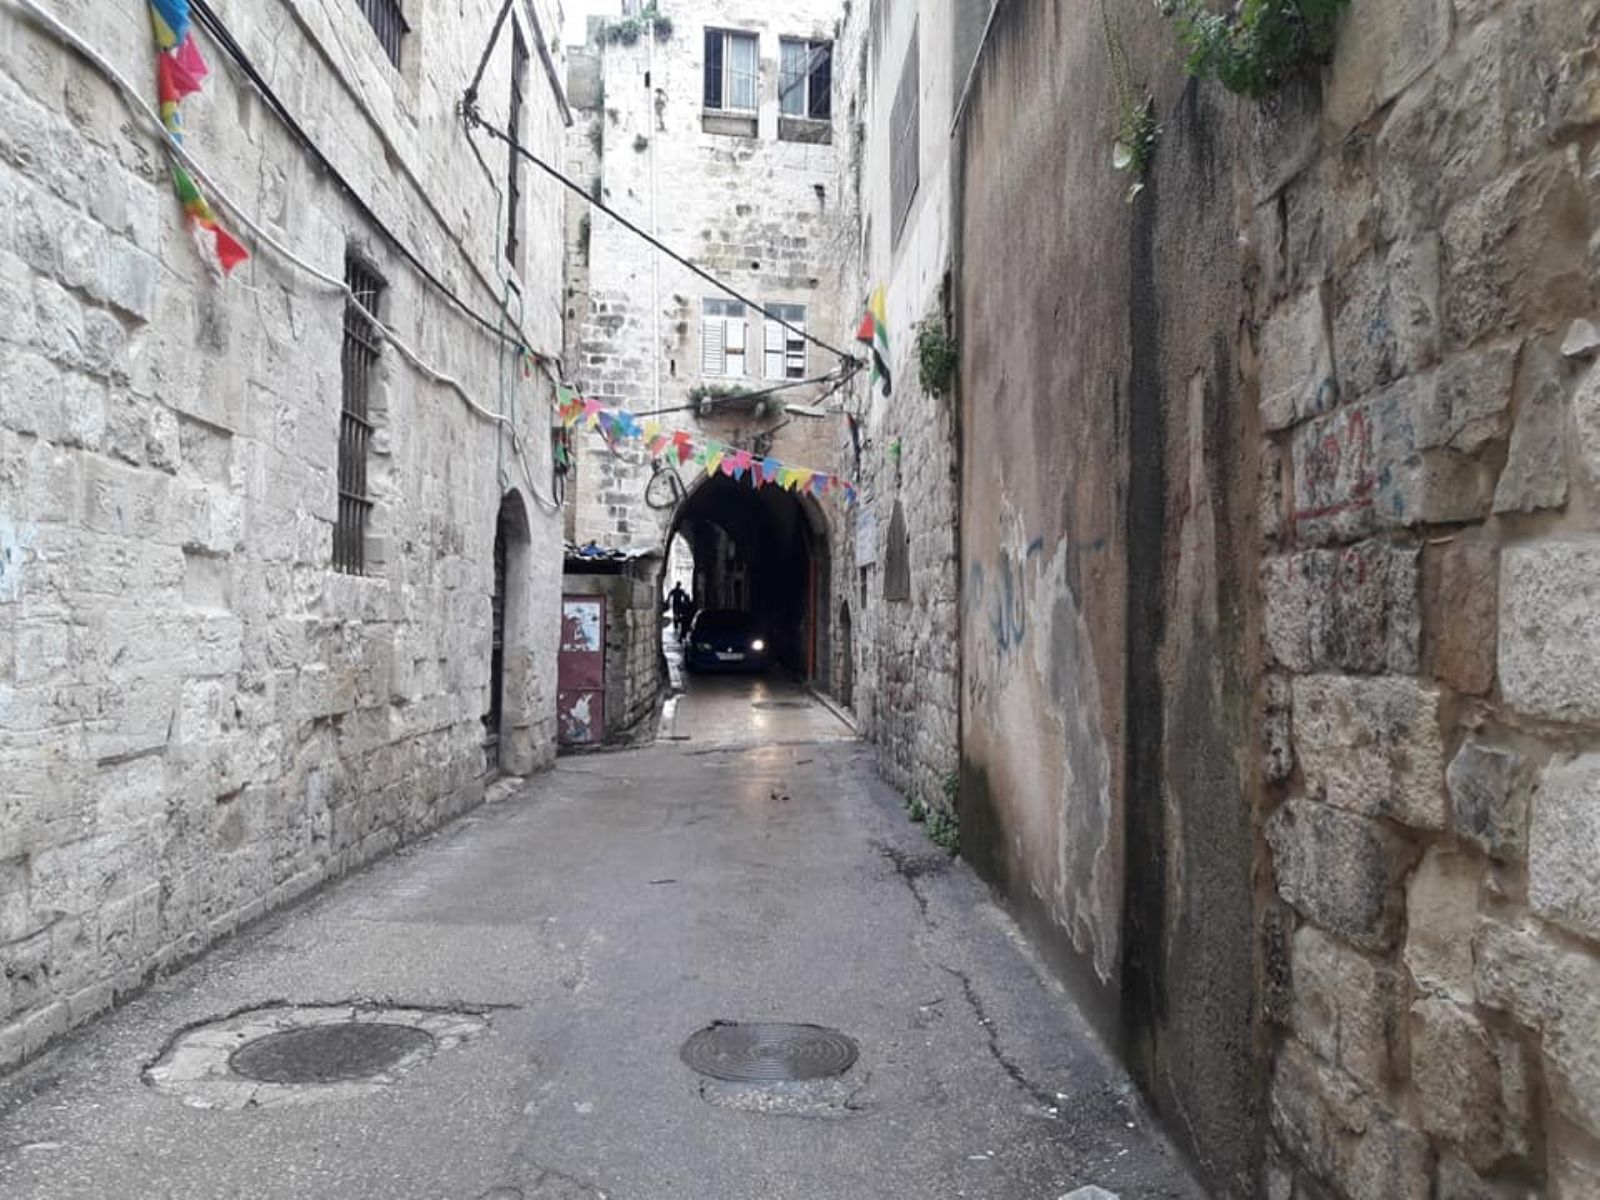 تجوال اصداء في البلدة القديمة تصوير الزميلة نور حنون